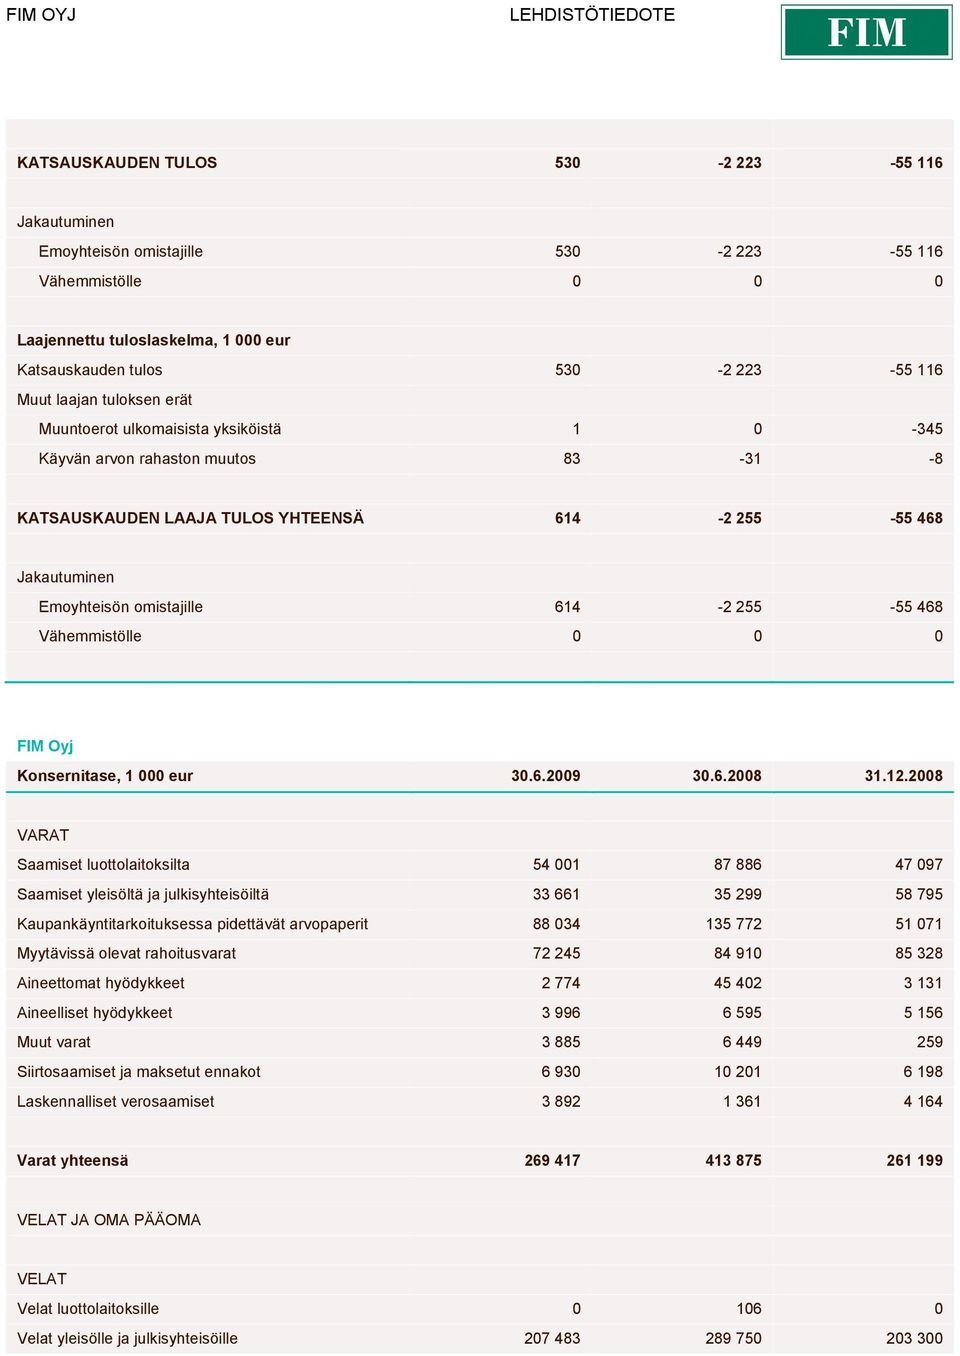 468 Vähemmistölle 0 0 0 FIM Oyj Konsernitase, 1 000 eur 30.6.2009 30.6.2008 31.12.